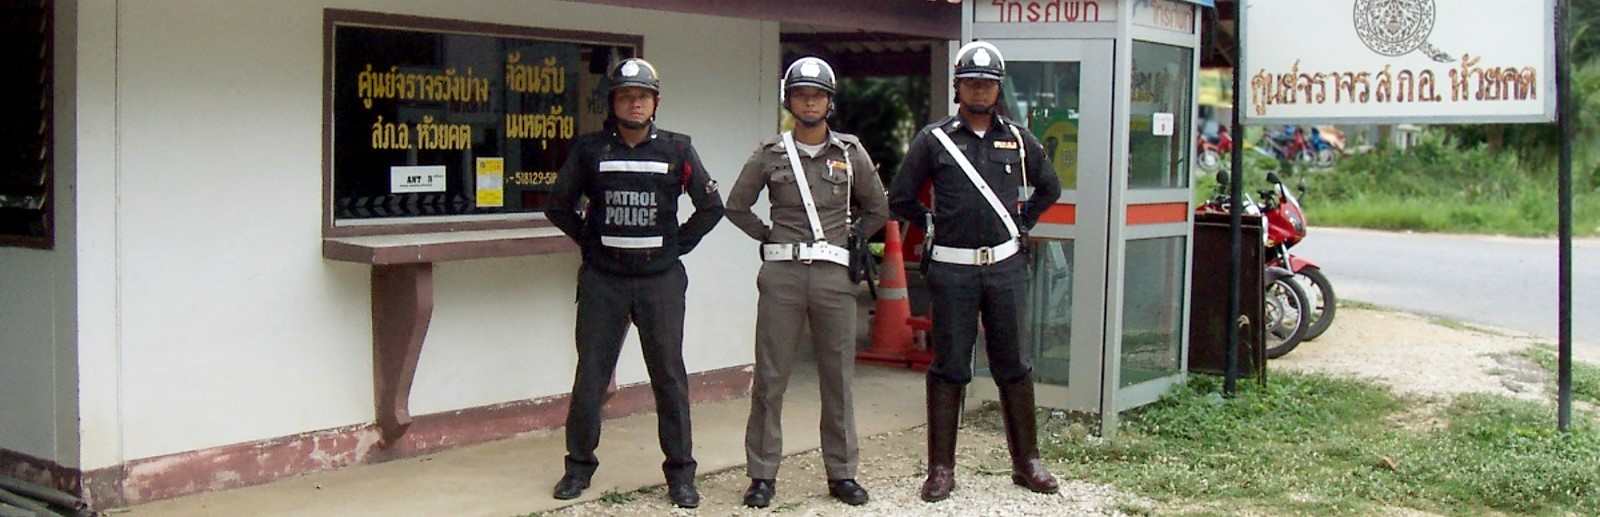 POLICE THAILAND.jpg